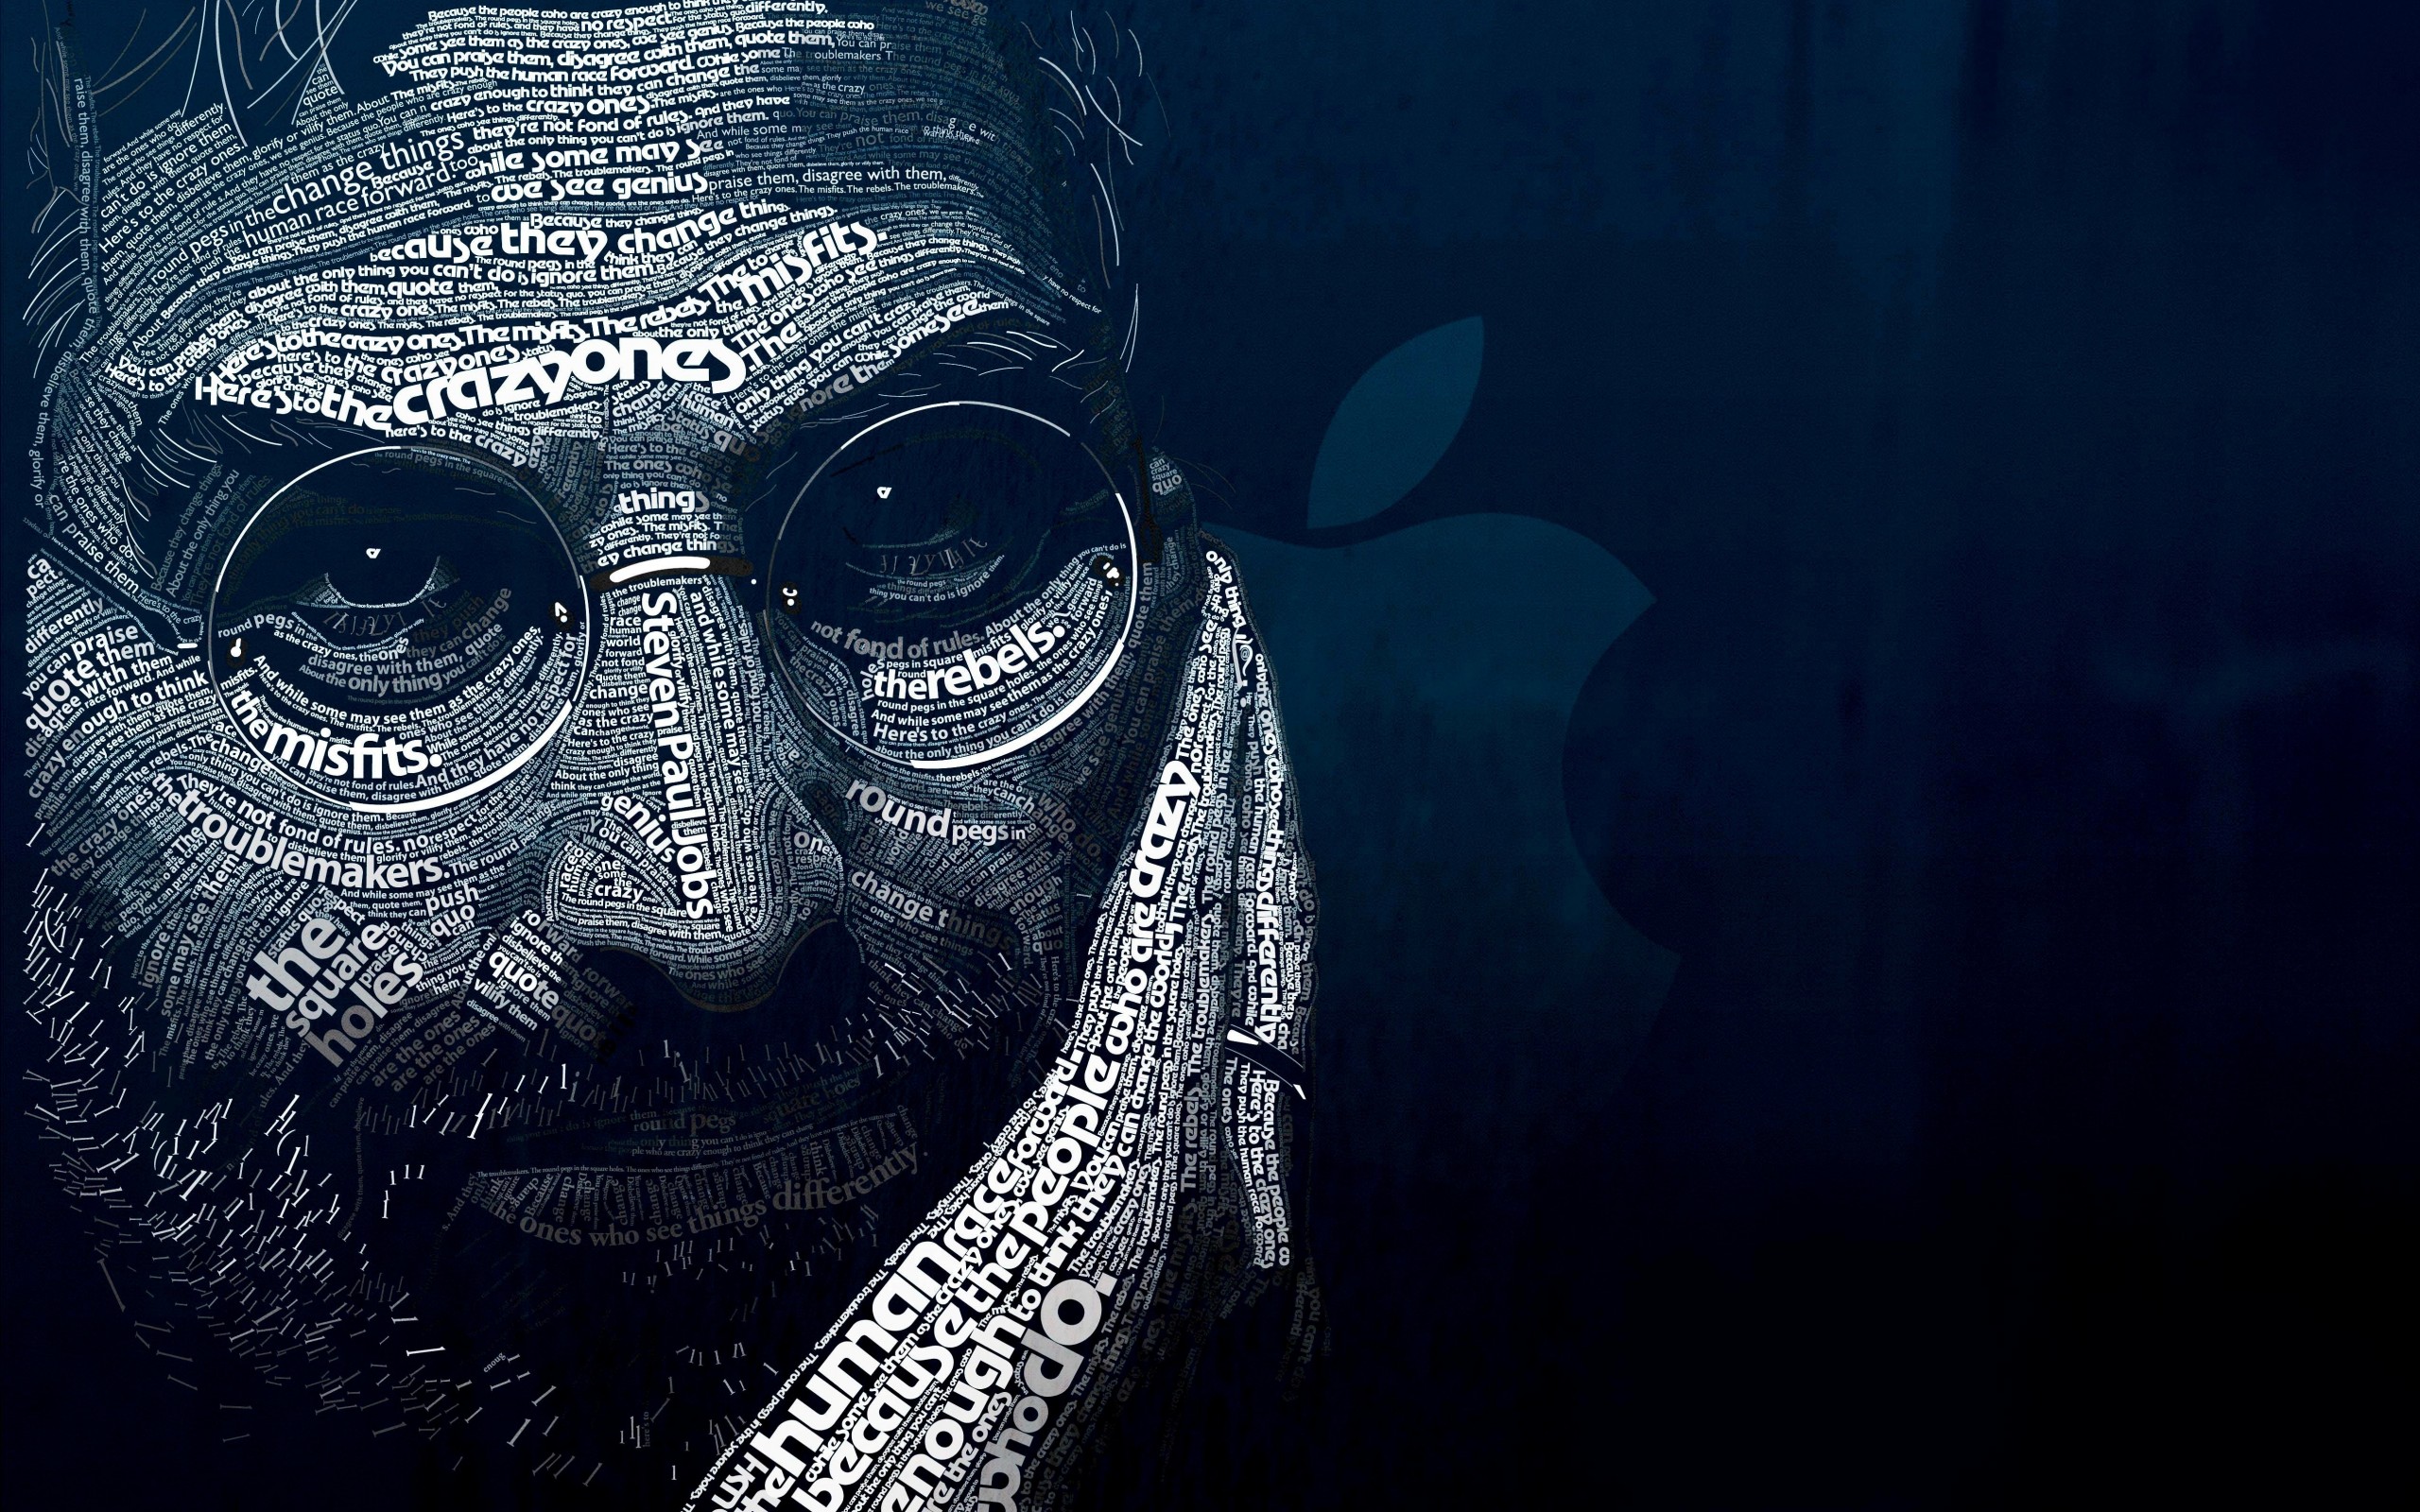 Steve Jobs Typographic Portrait Wallpaper for Desktop 2560x1600